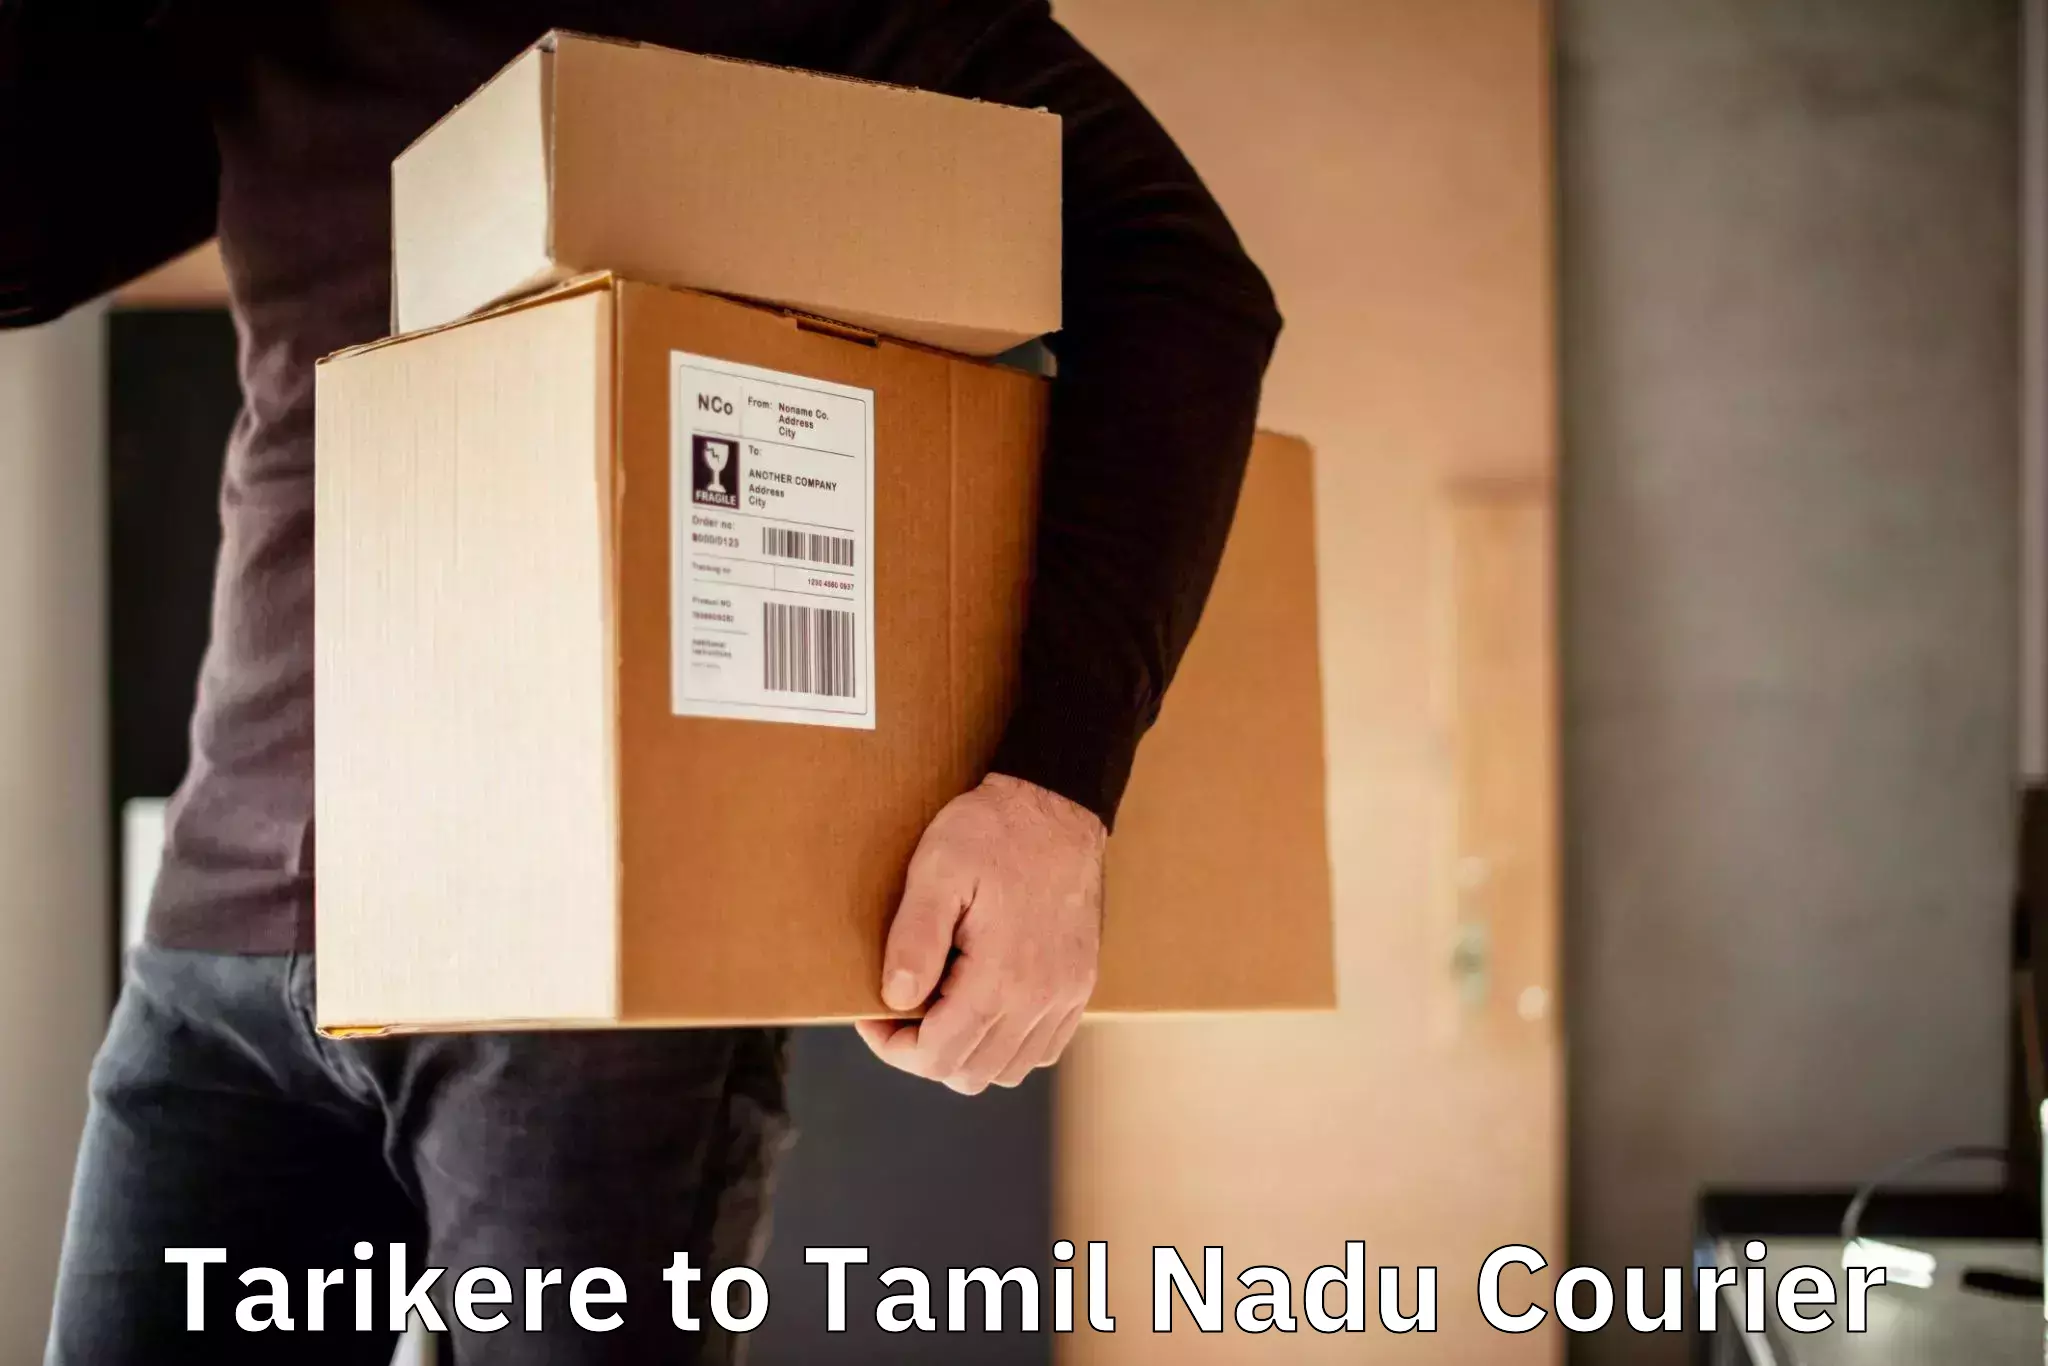 Customer-centric shipping Tarikere to Amrita Vishwa Vidyapeetham Coimbatore